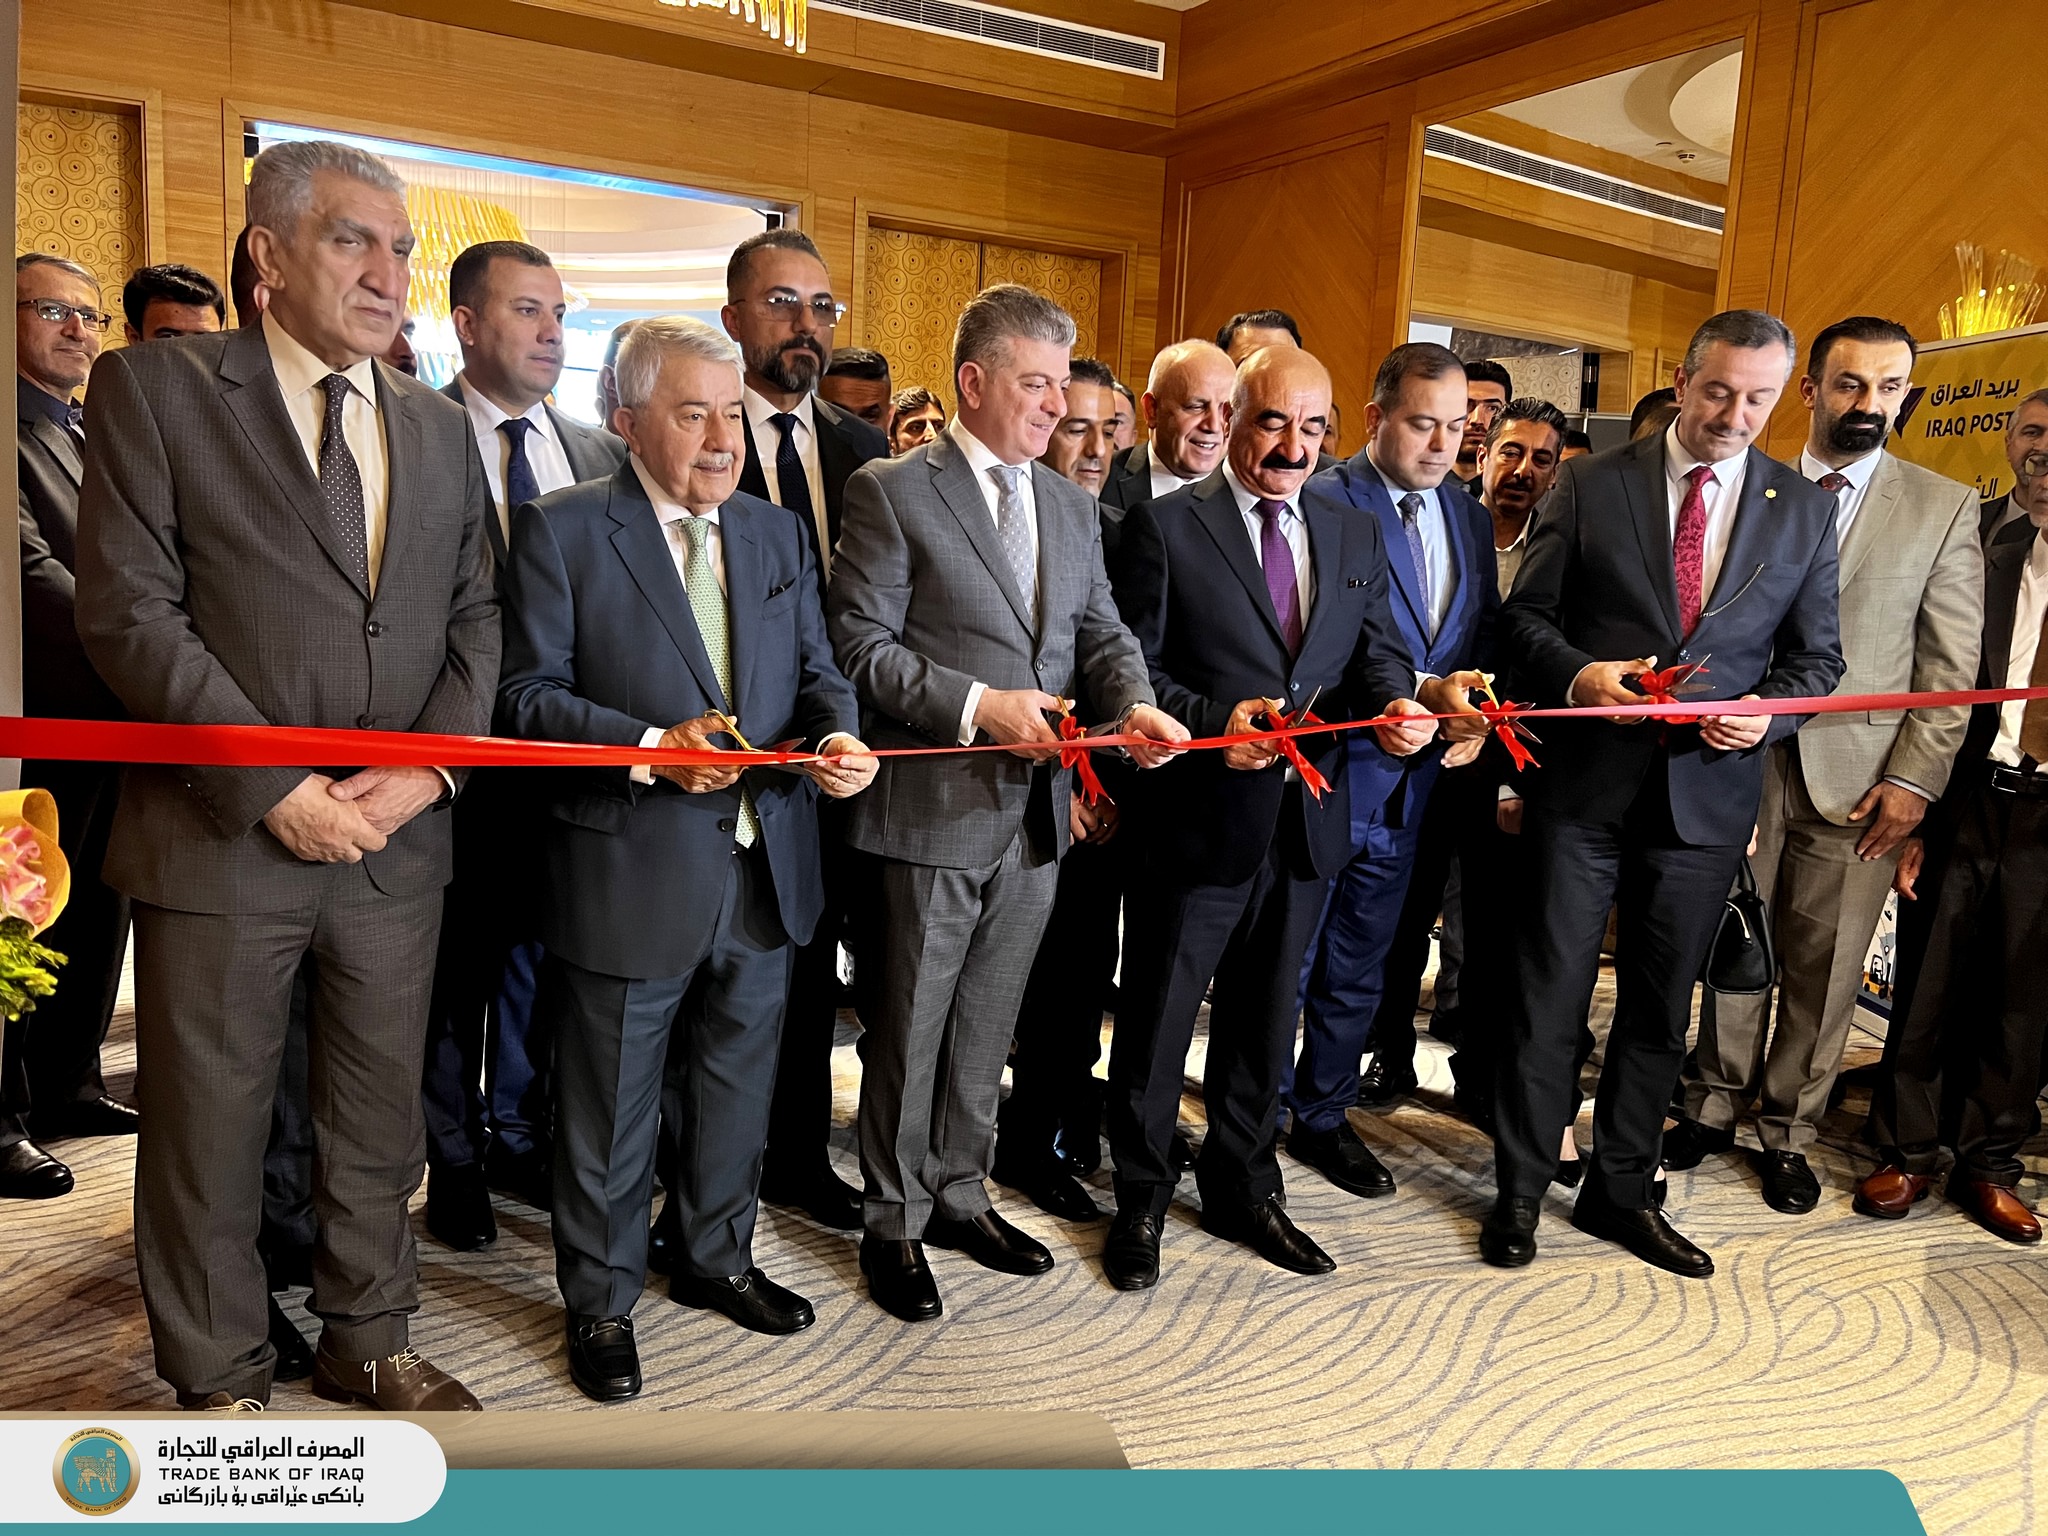 جانب من مشاركة المصرف العراقي للتجارة في ملتقى ومؤتمر الاتصالات والإلكترونيات والإعلام الثالث (CEMEX) في السليمانية